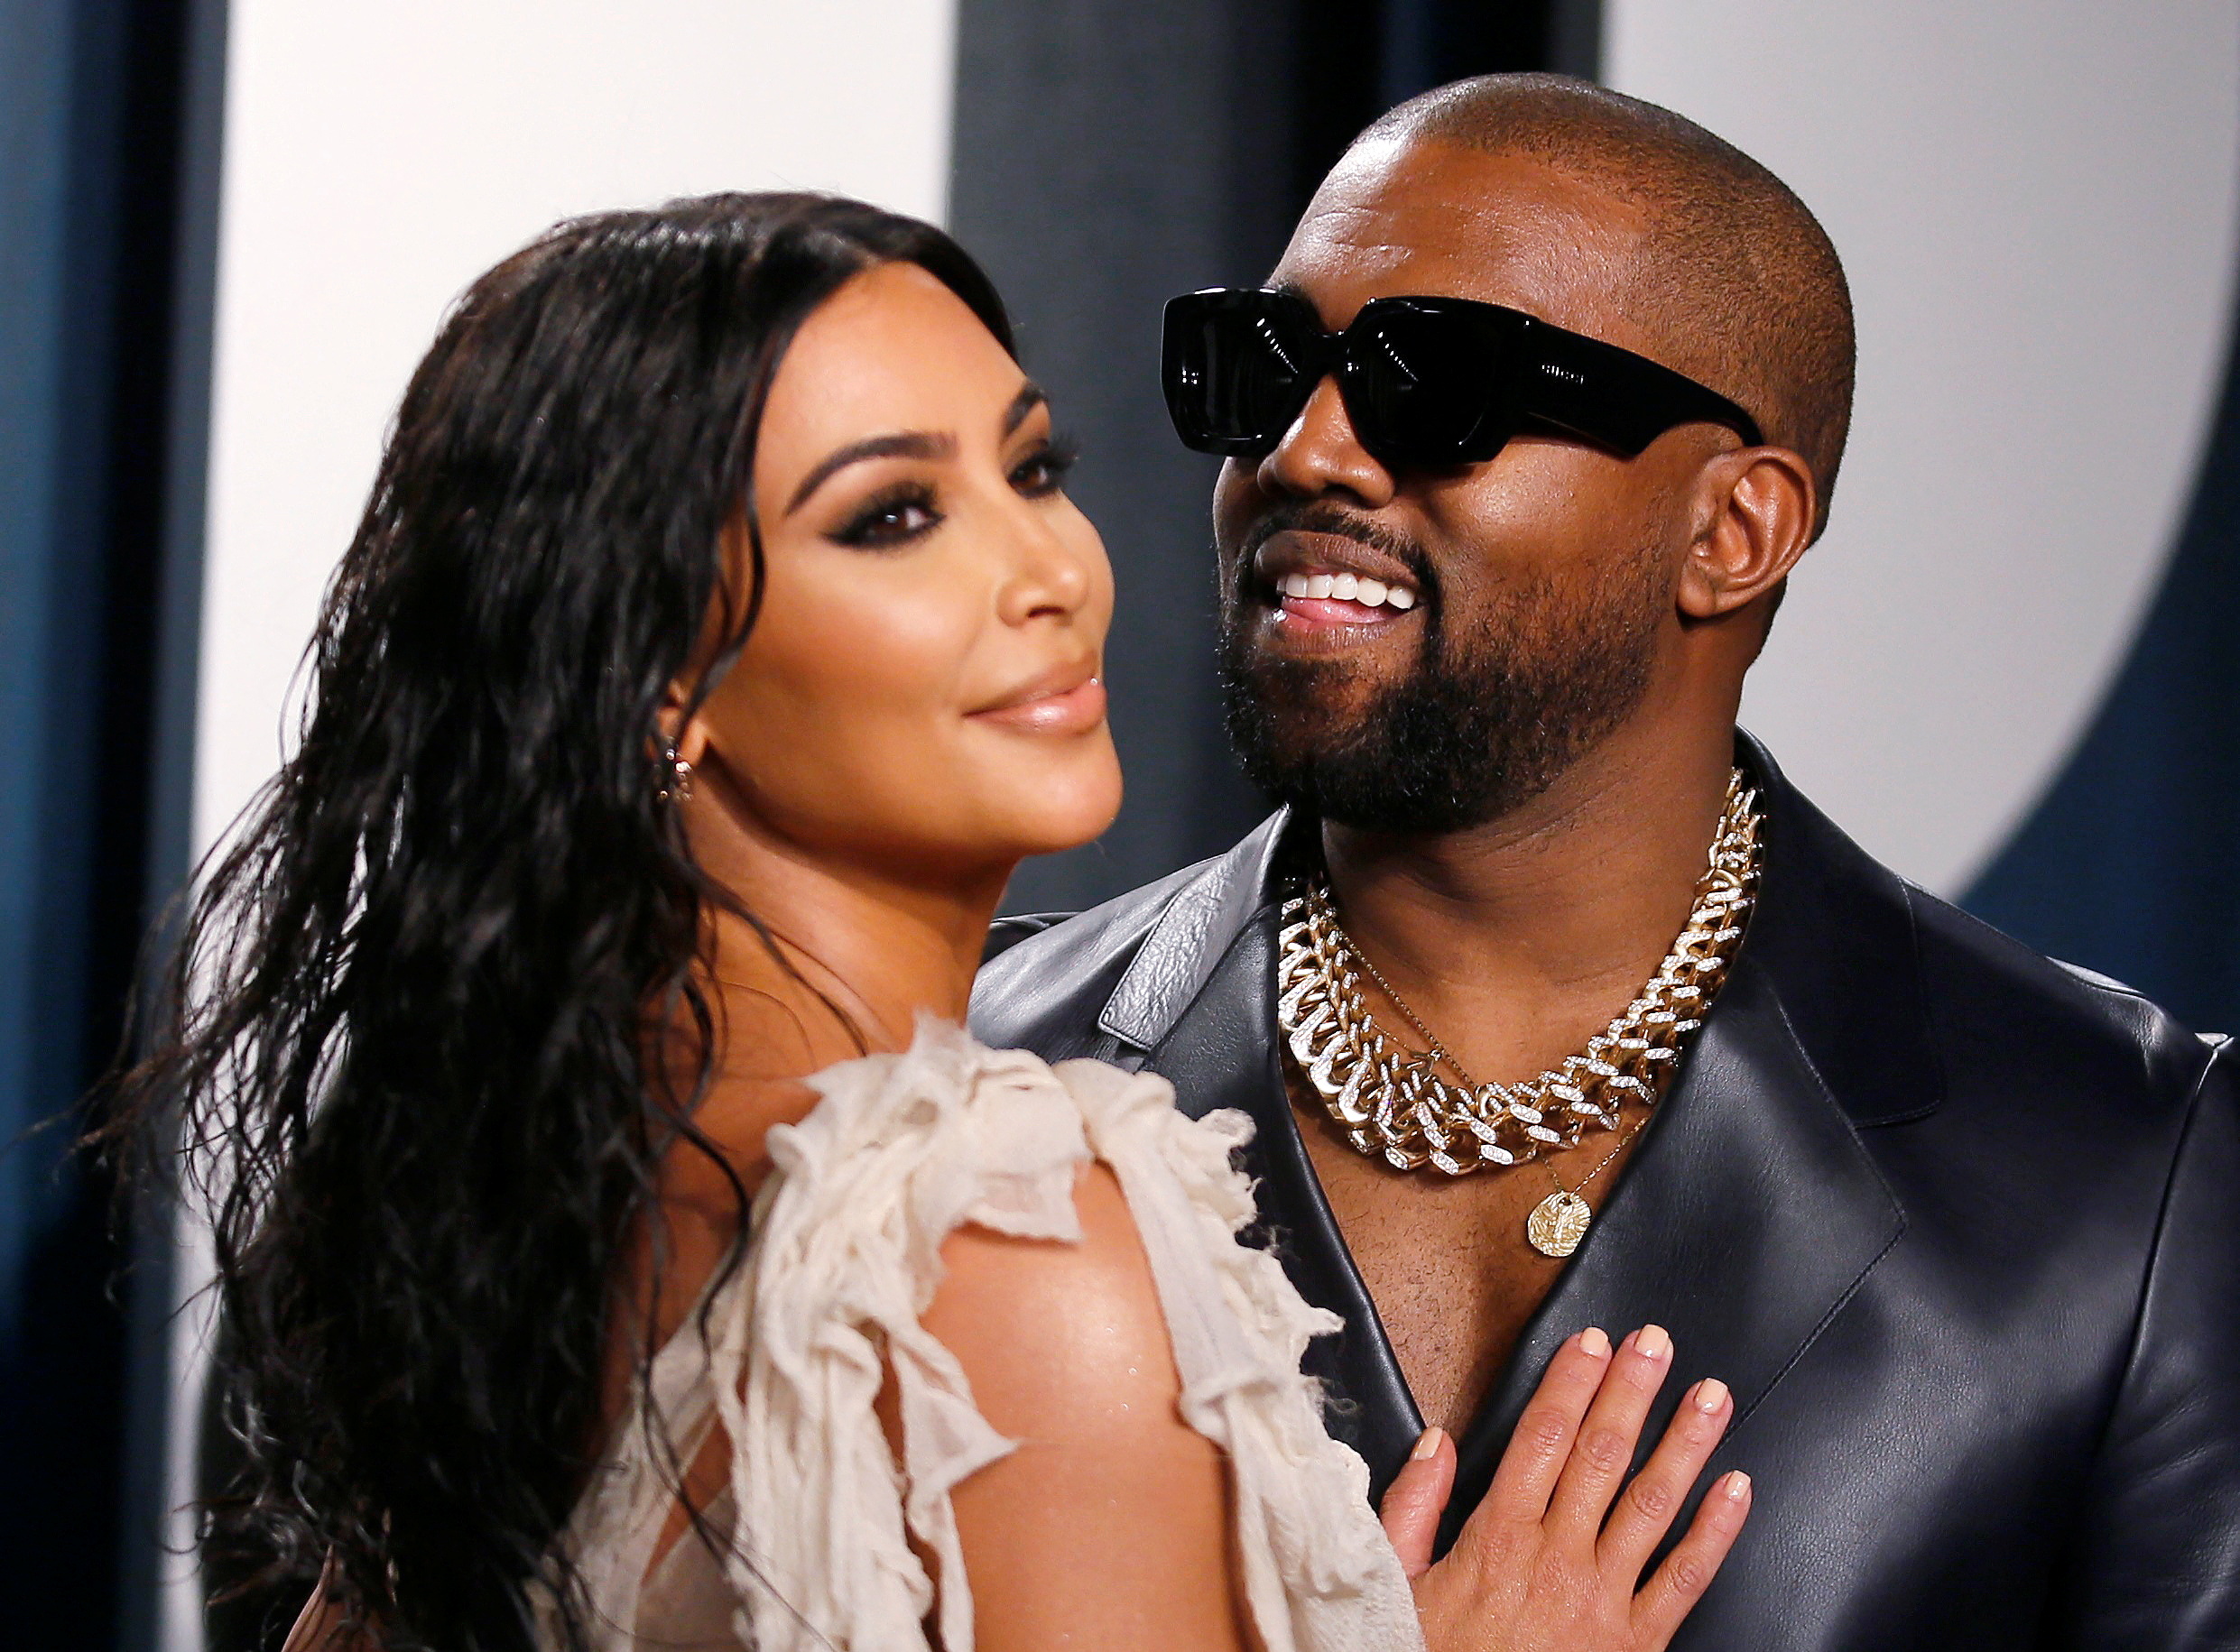 En su momento, el romance entre Pete y Kim puso sumamente celoso a Kanye West, ahora ex esposo de la empresaria (Foto: REUTERS/Danny Moloshok/File Photo)